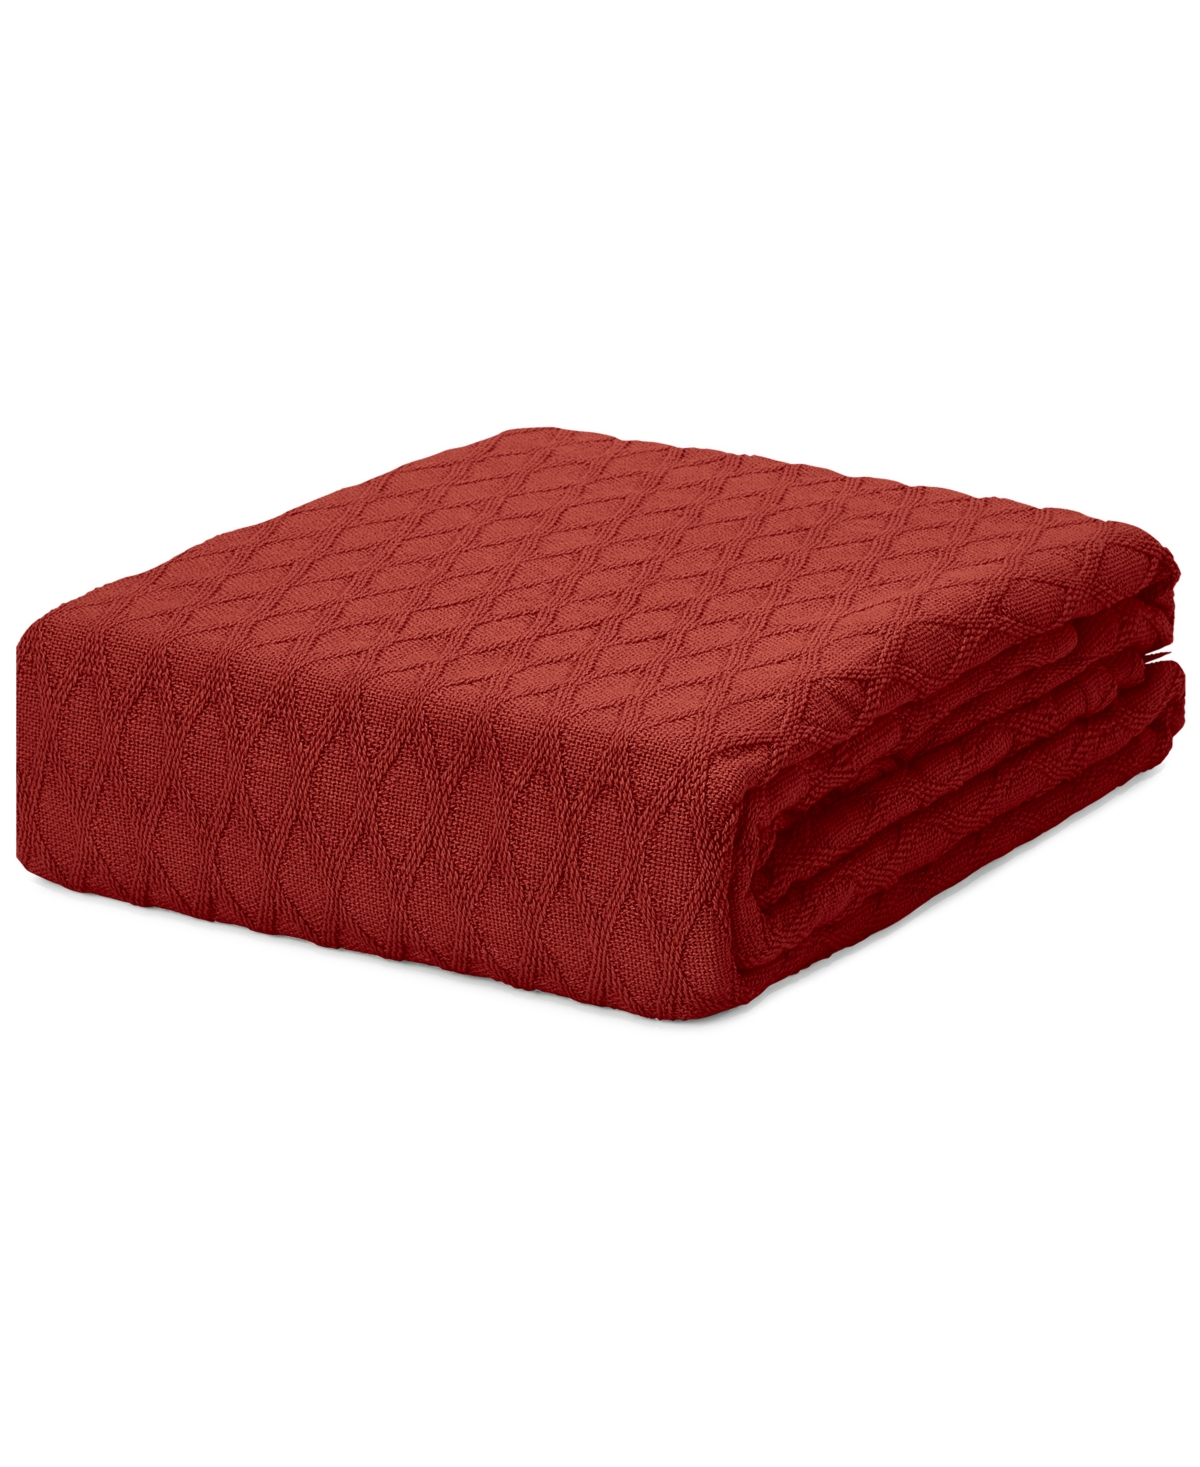 Lauren Ralph Lauren Classic 100% Cotton Blanket, Full/queen In Red